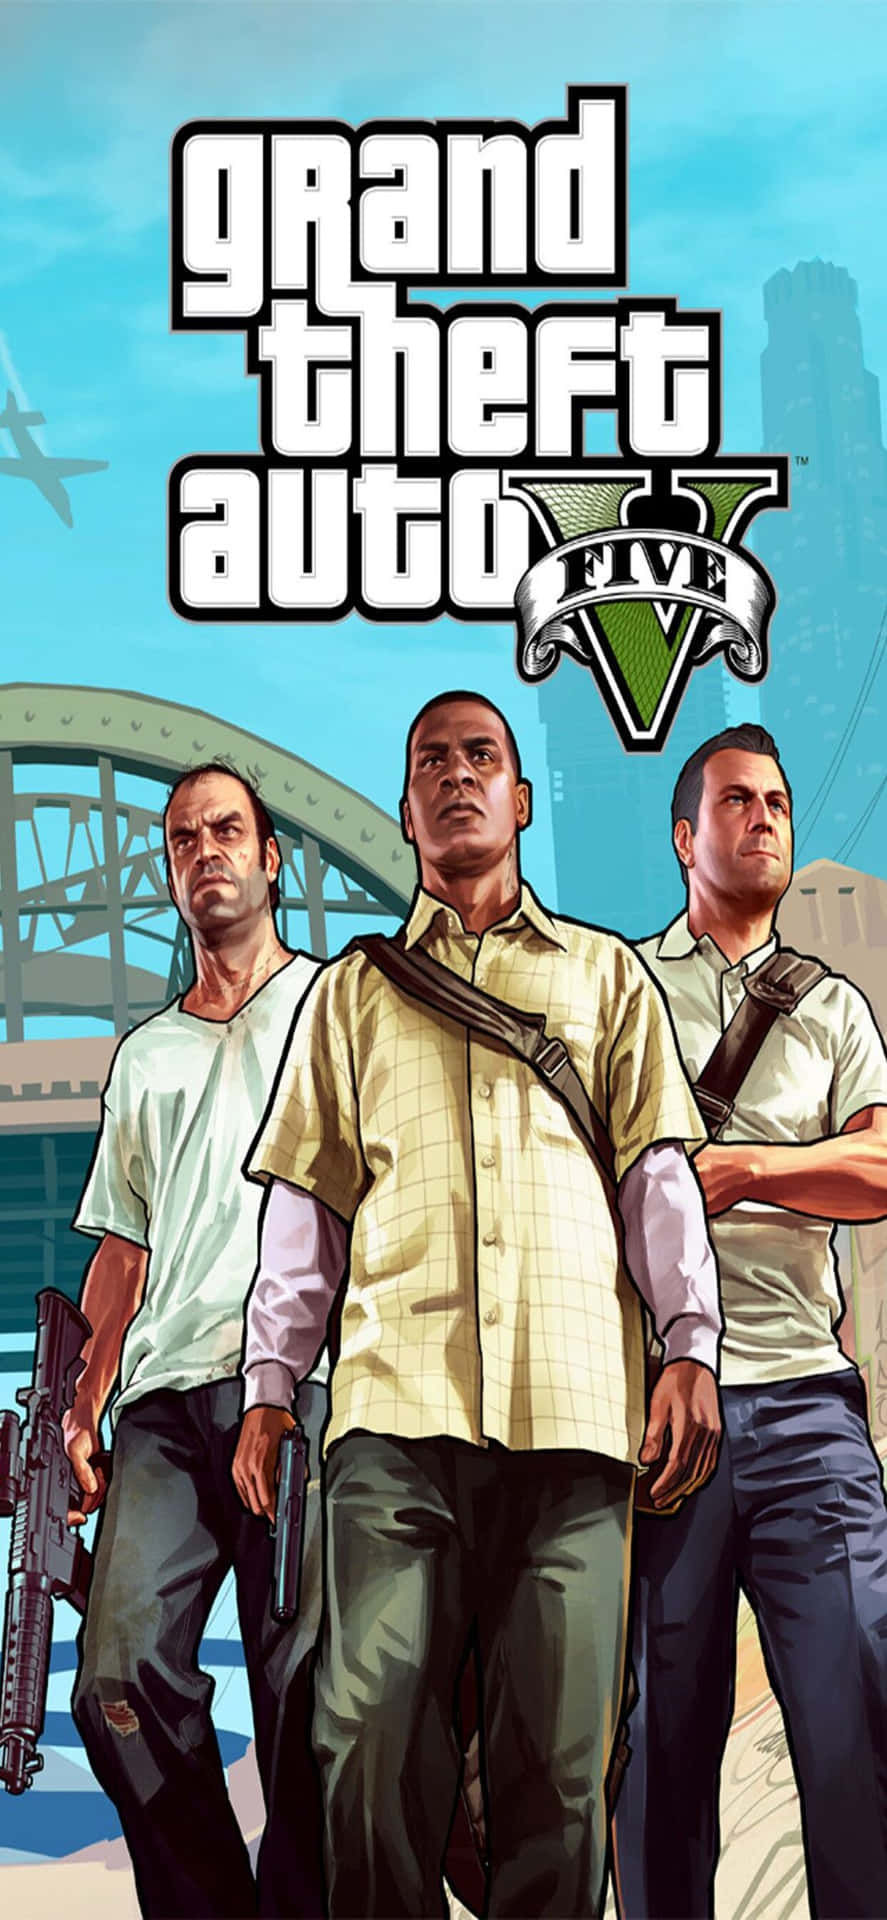 Iphonexs Max Bakgrundsbild Från Grand Theft Auto V Med Trevor, Michael Och Franklin.